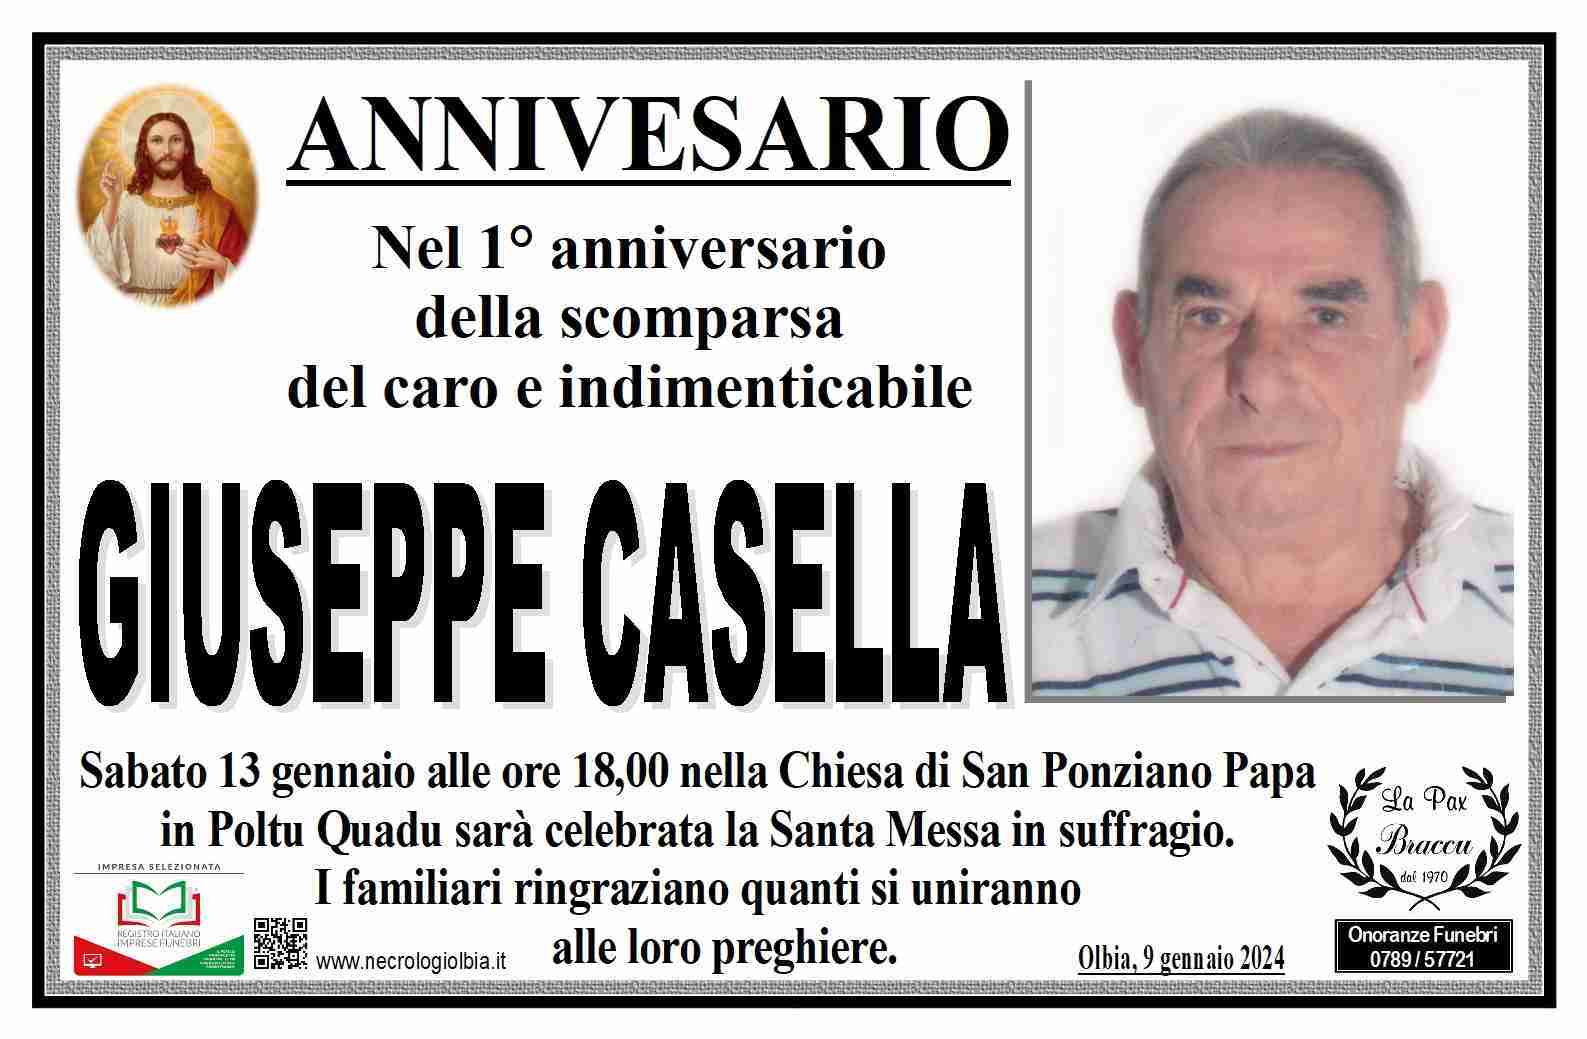 Giuseppe Casella